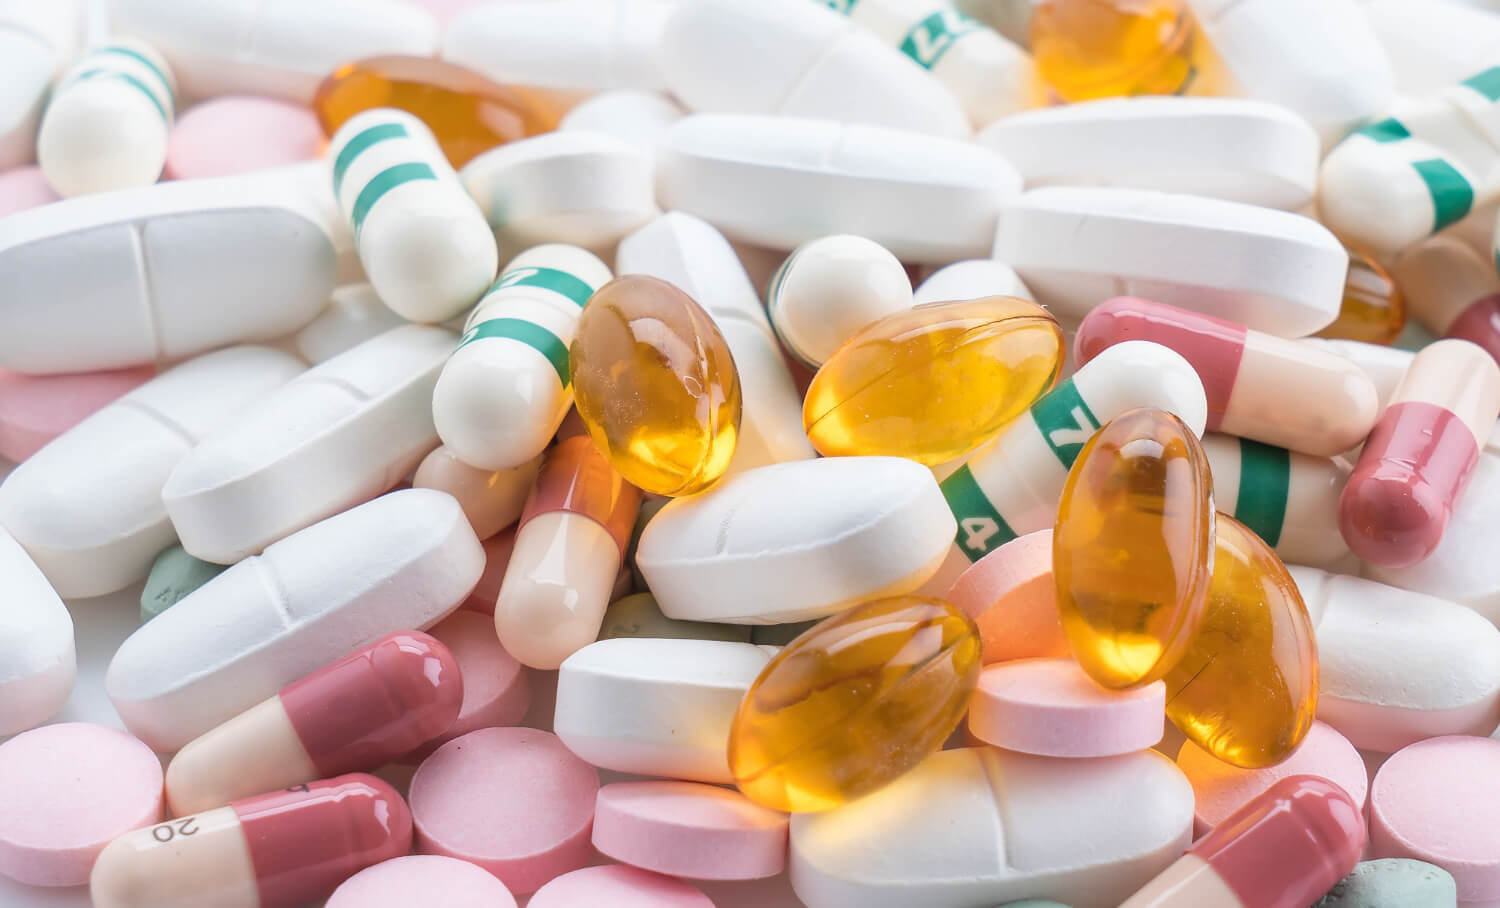 packings-pills-capsules-medicines